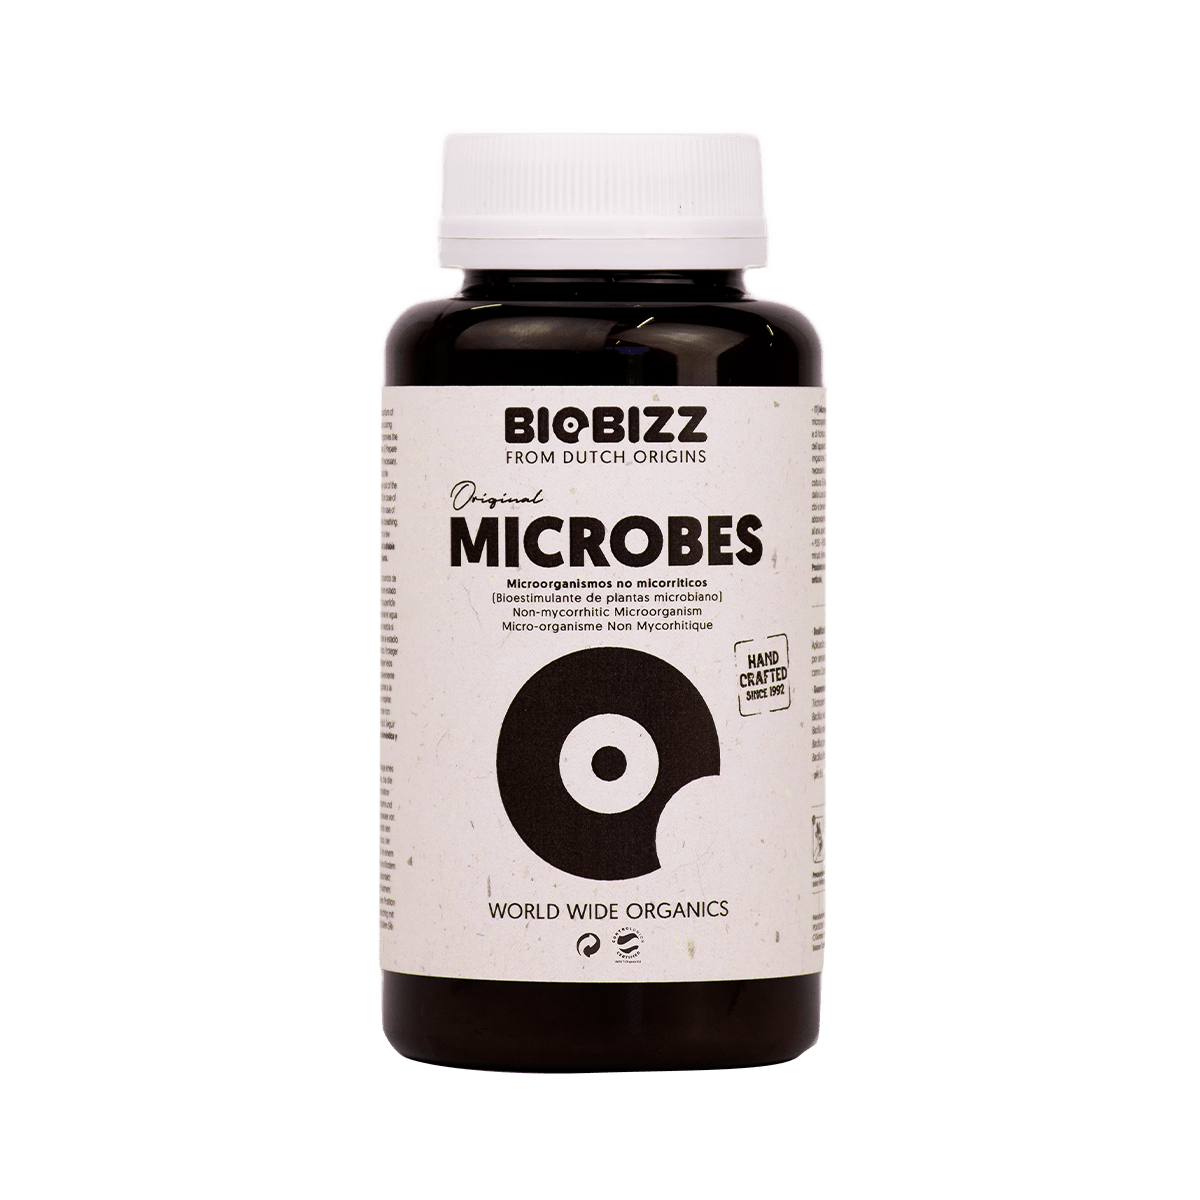 BioBizz Microbes - Hochwertige Mikroorganismen 